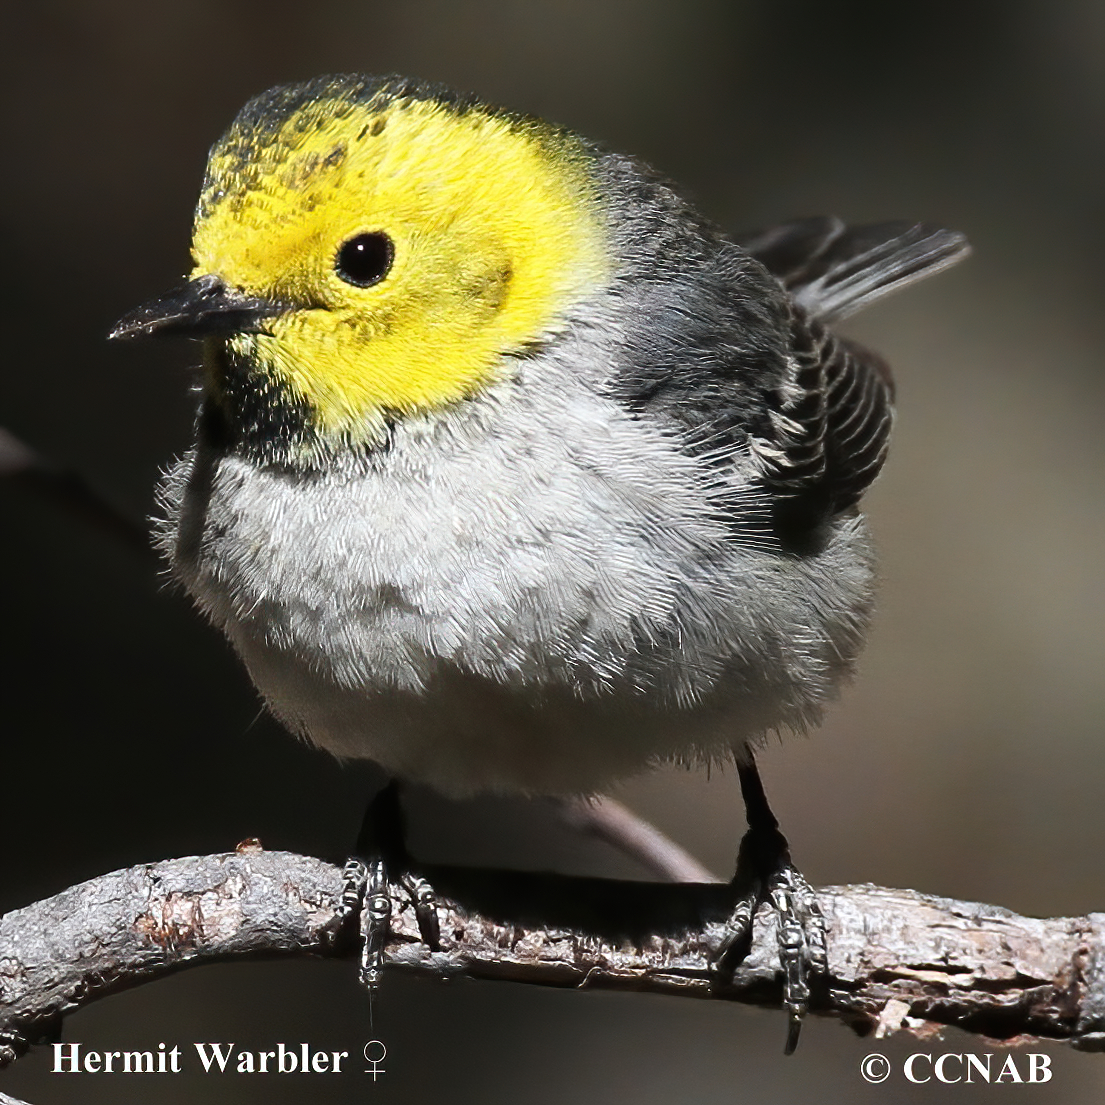  Hermit Warbler